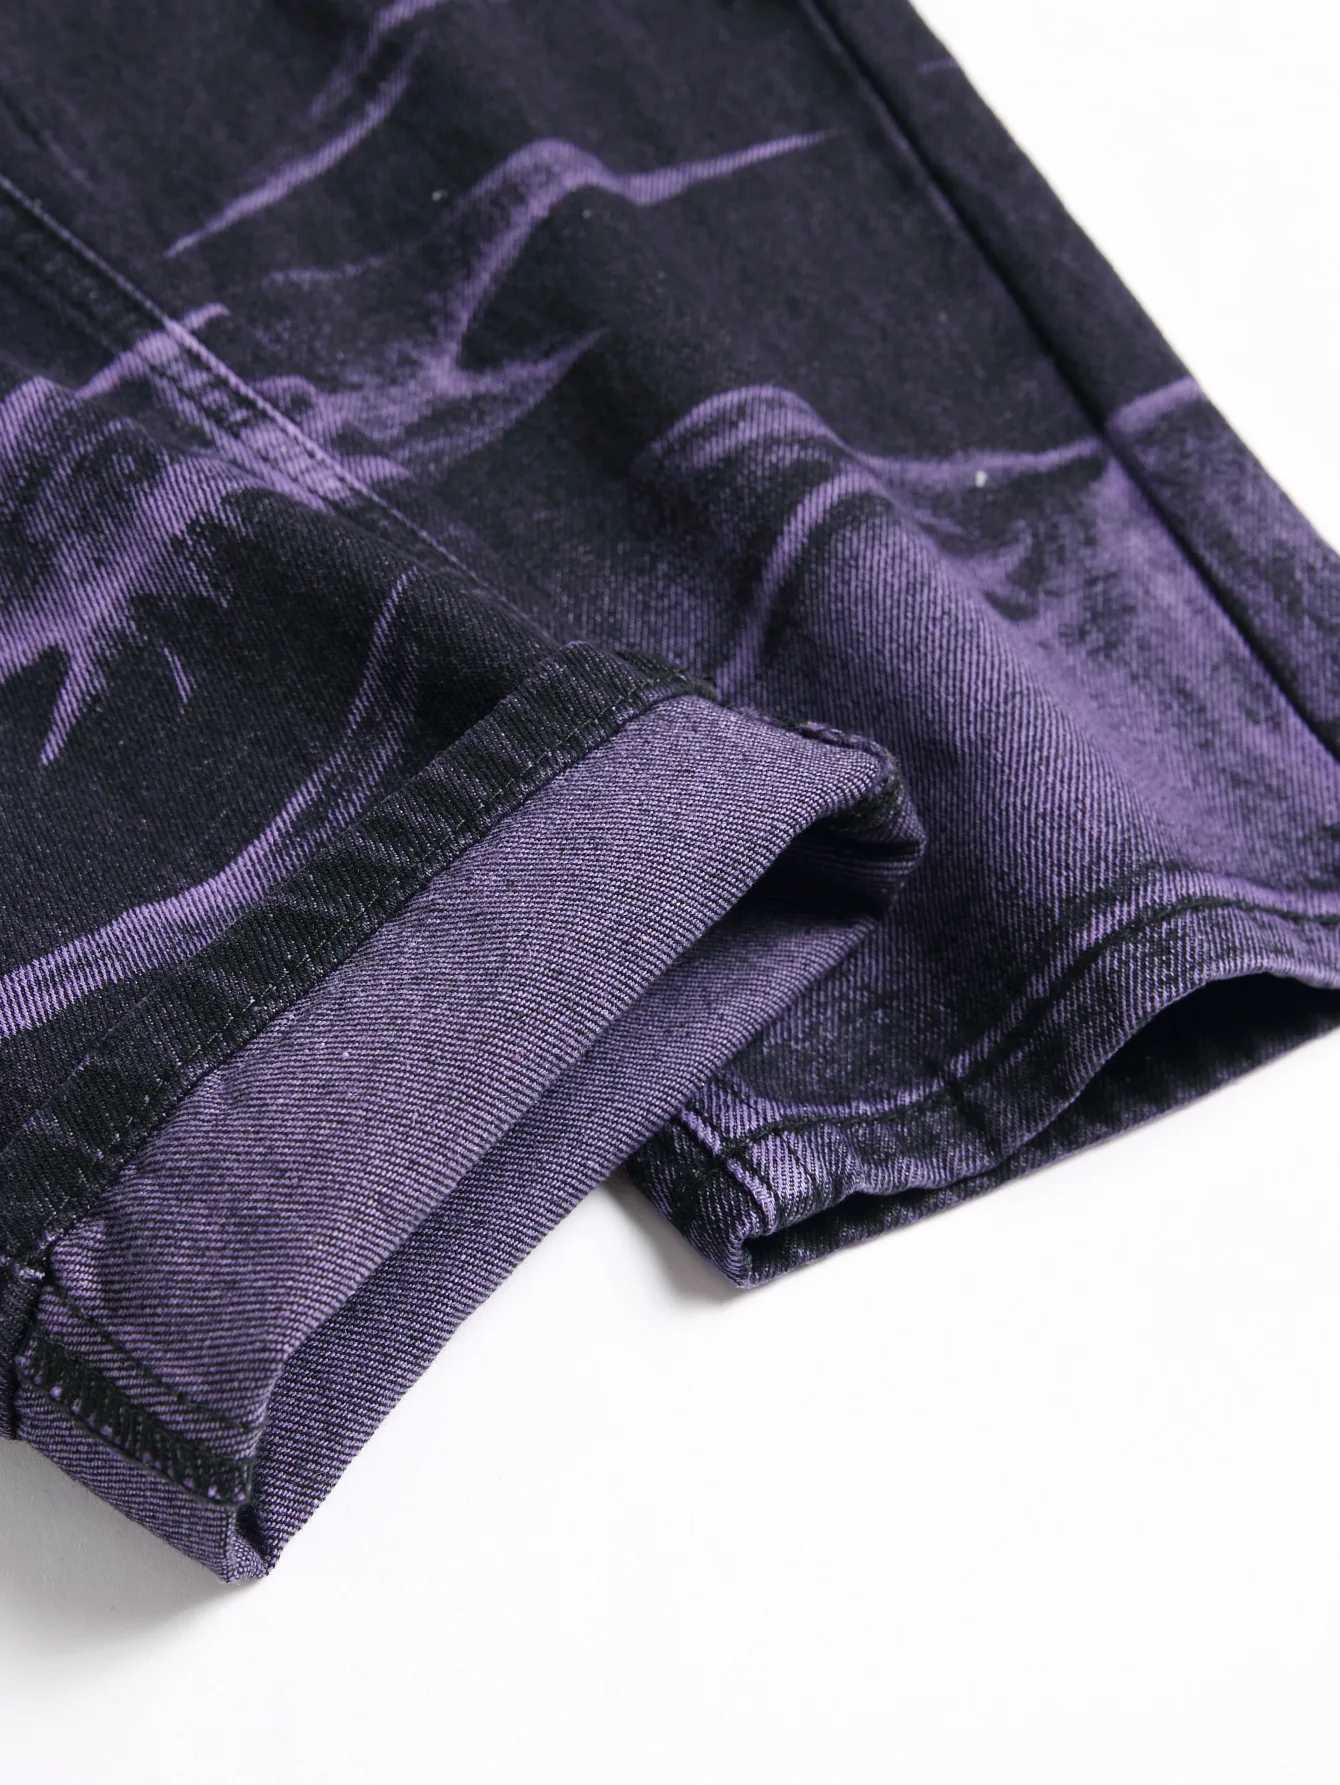 Jeans pour hommes Jeans déchirés pour hommes Pantalon en denim serré saisonnier Personnalisé Violet Noir Jeans droits Mode Pantalon pour jeunes J240328